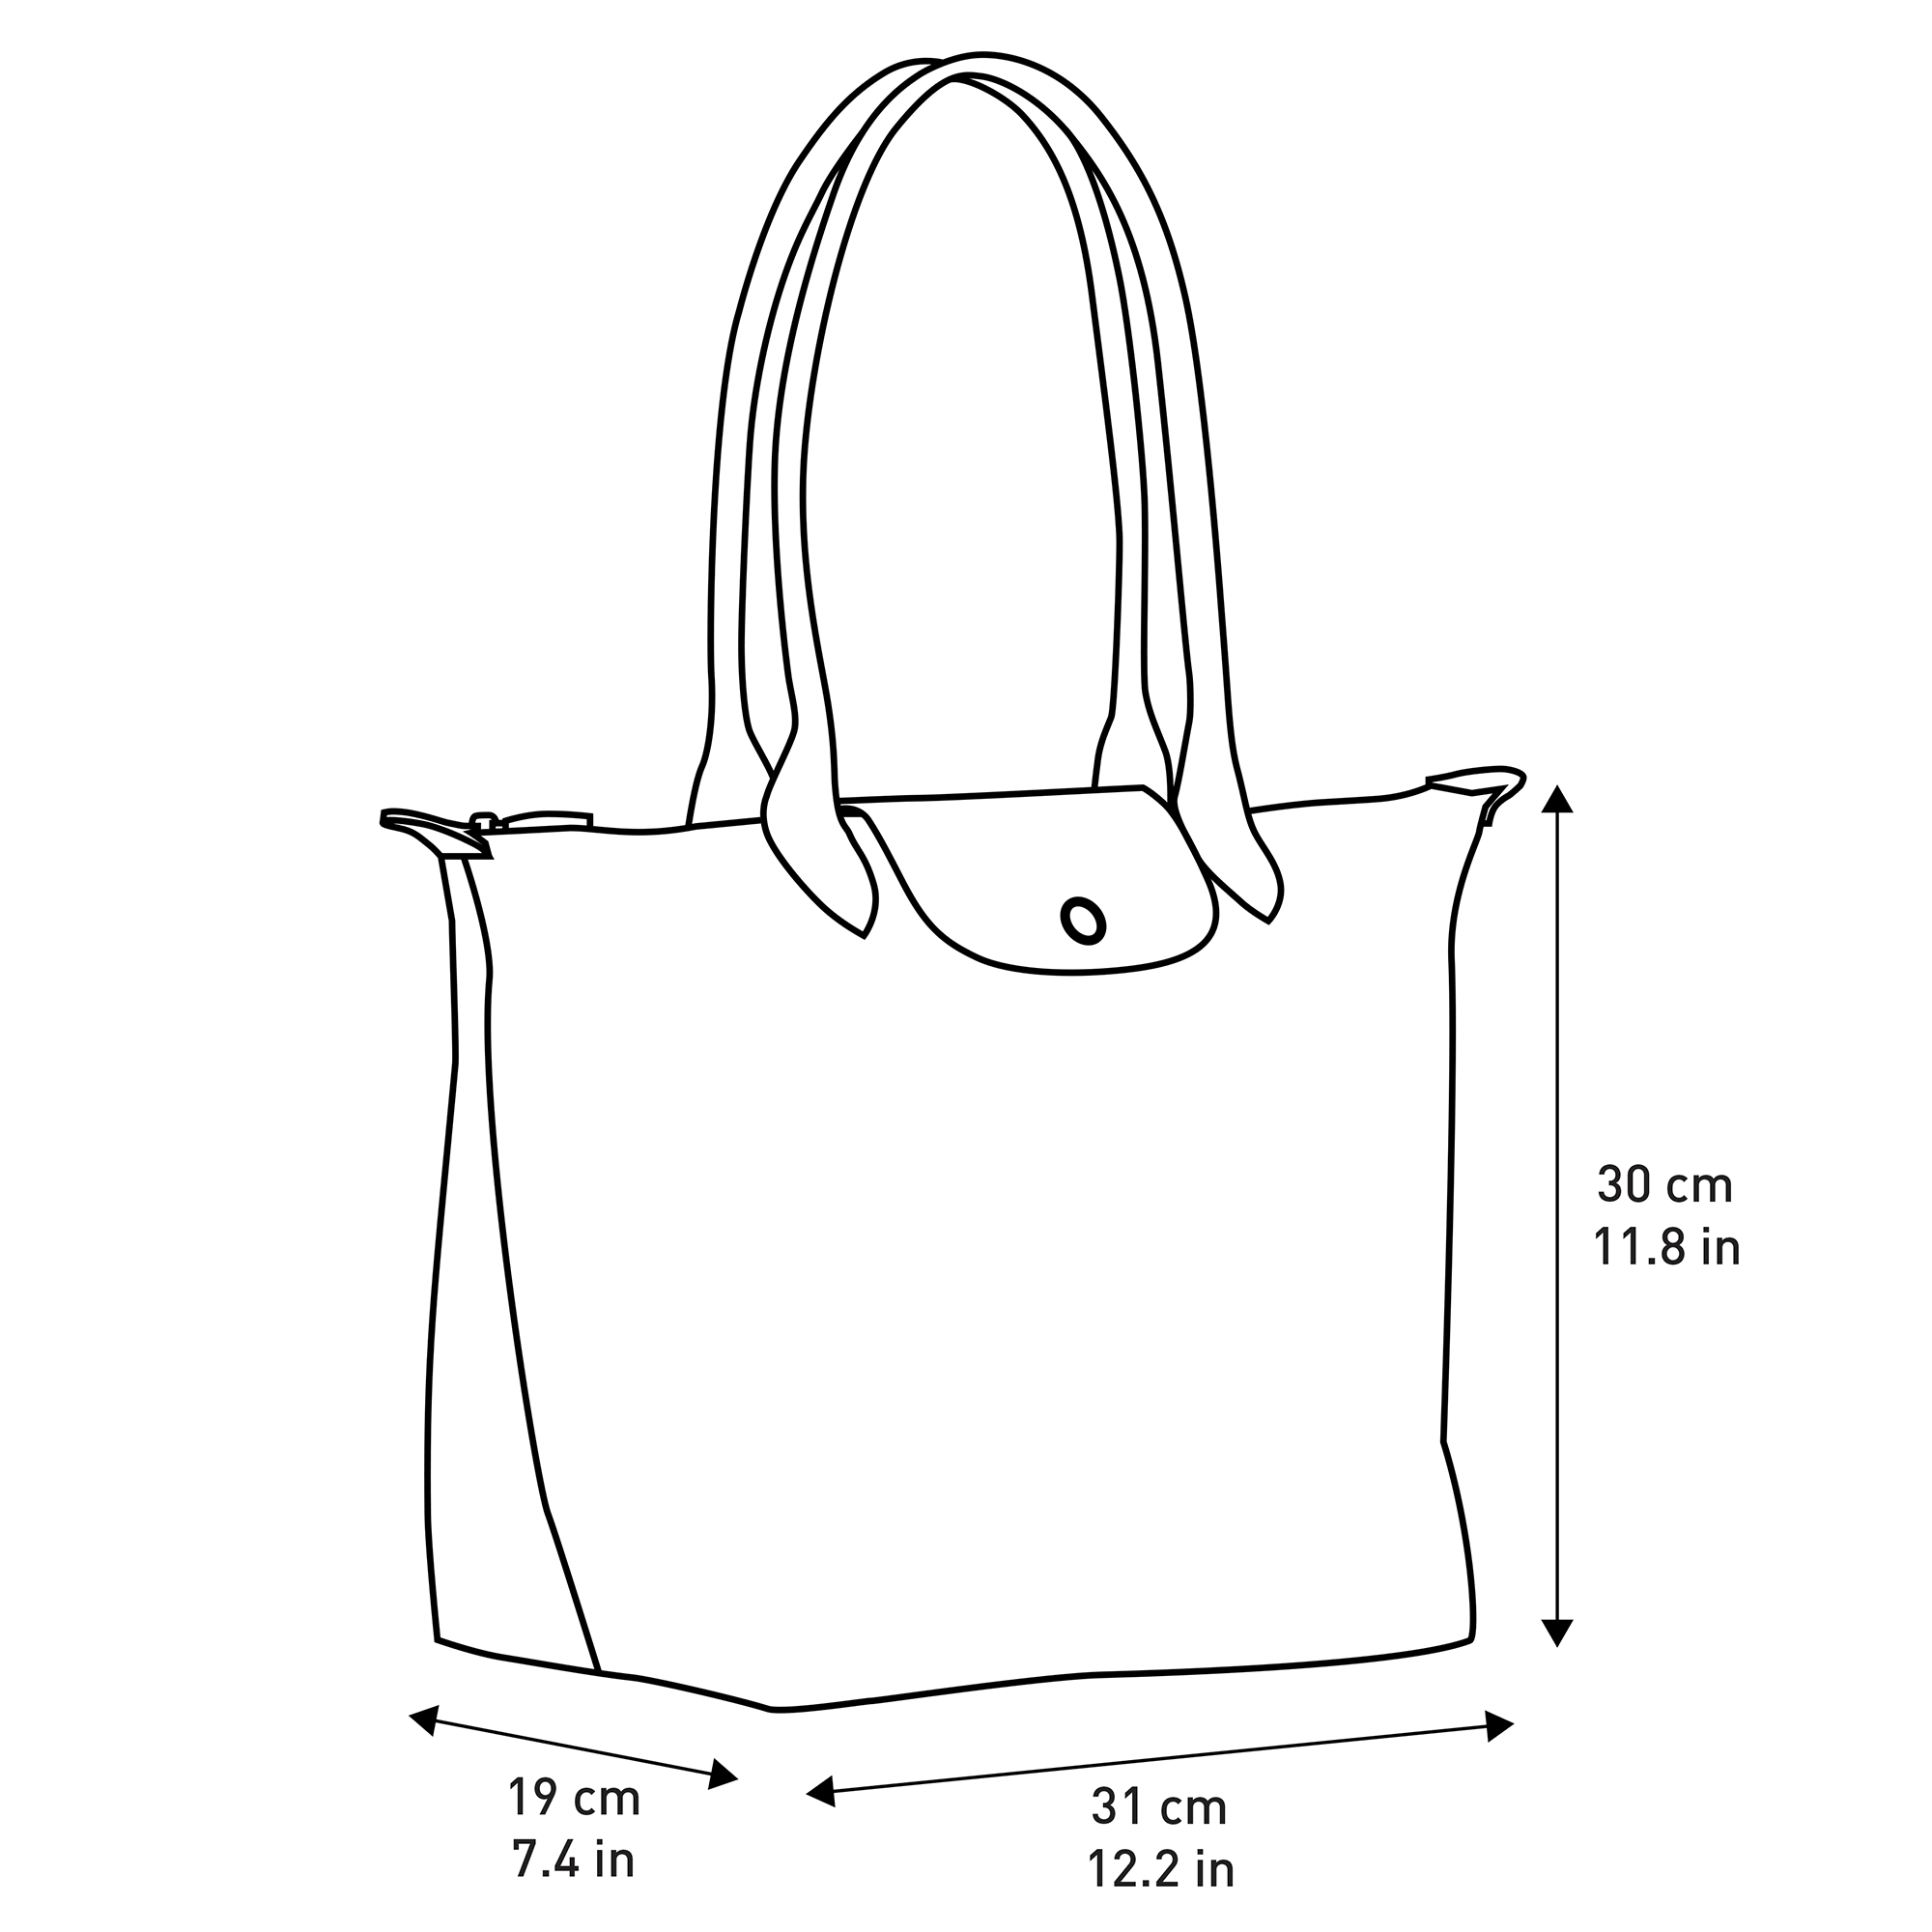 shopping bag longchamp